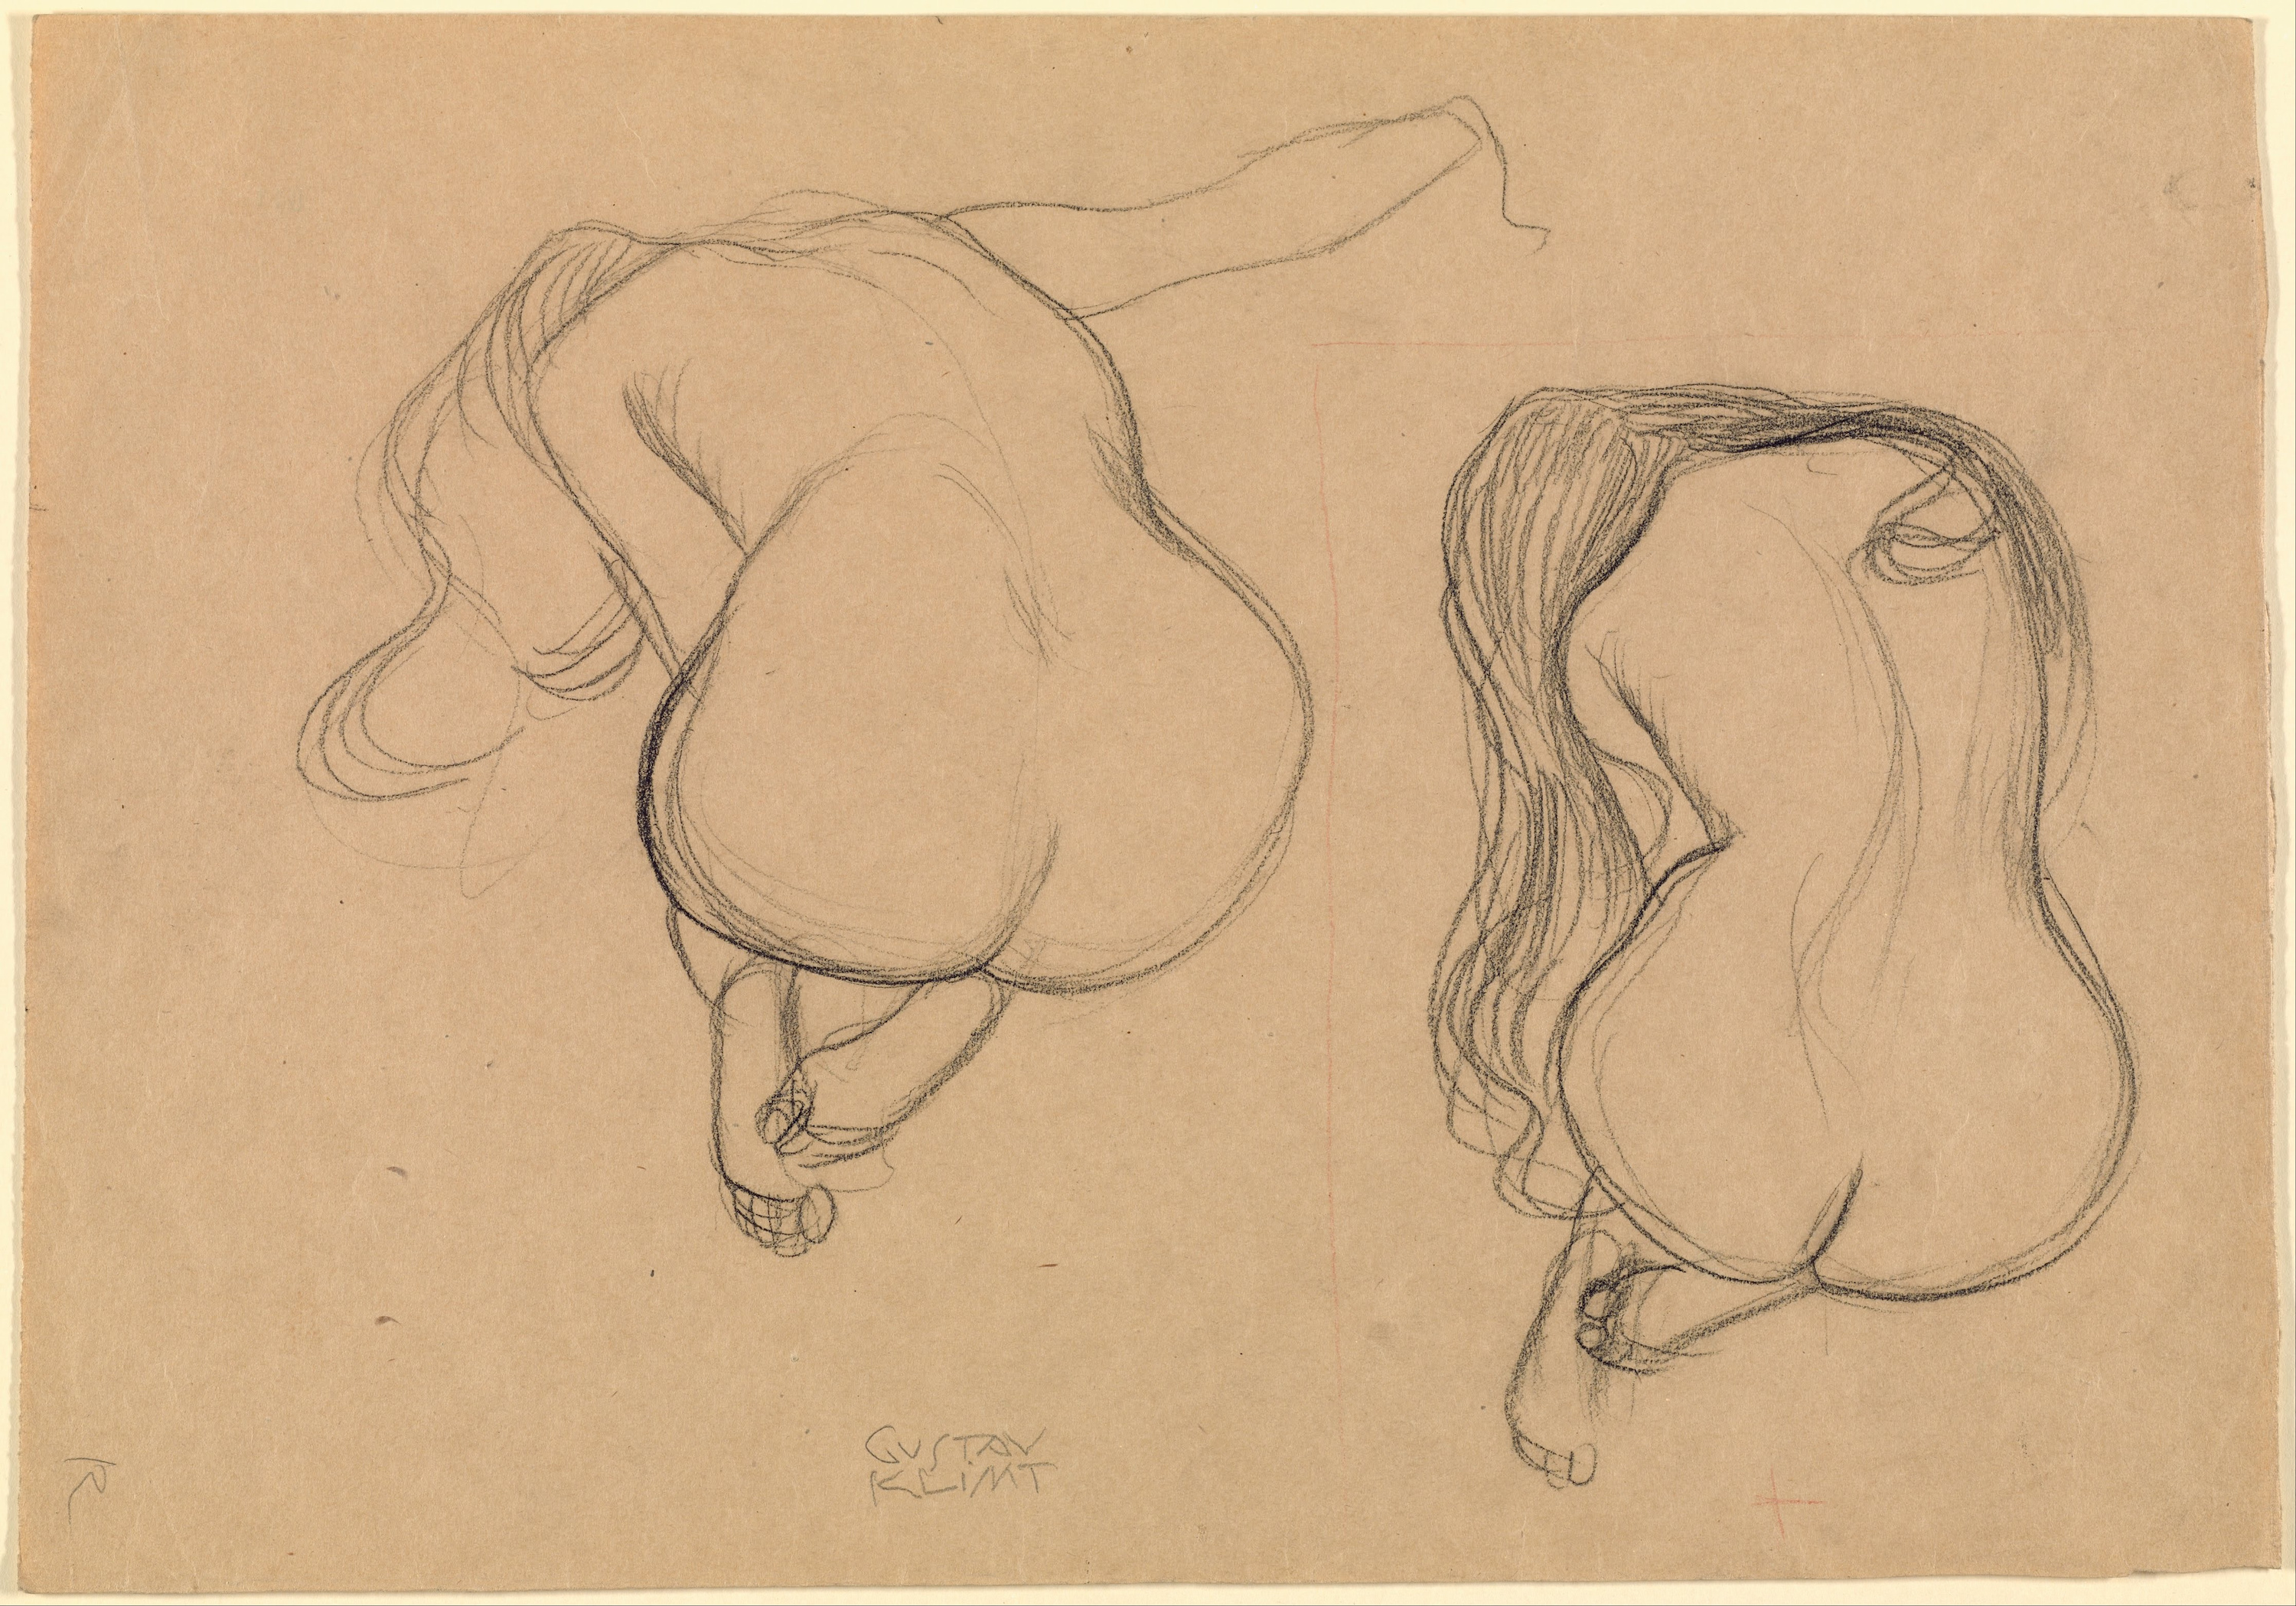 Dois Estudos de Nudez Sentada com Cabelo Comprido by Gustav Klimt - 1901-02 - 45.2 x 31.7 cm 